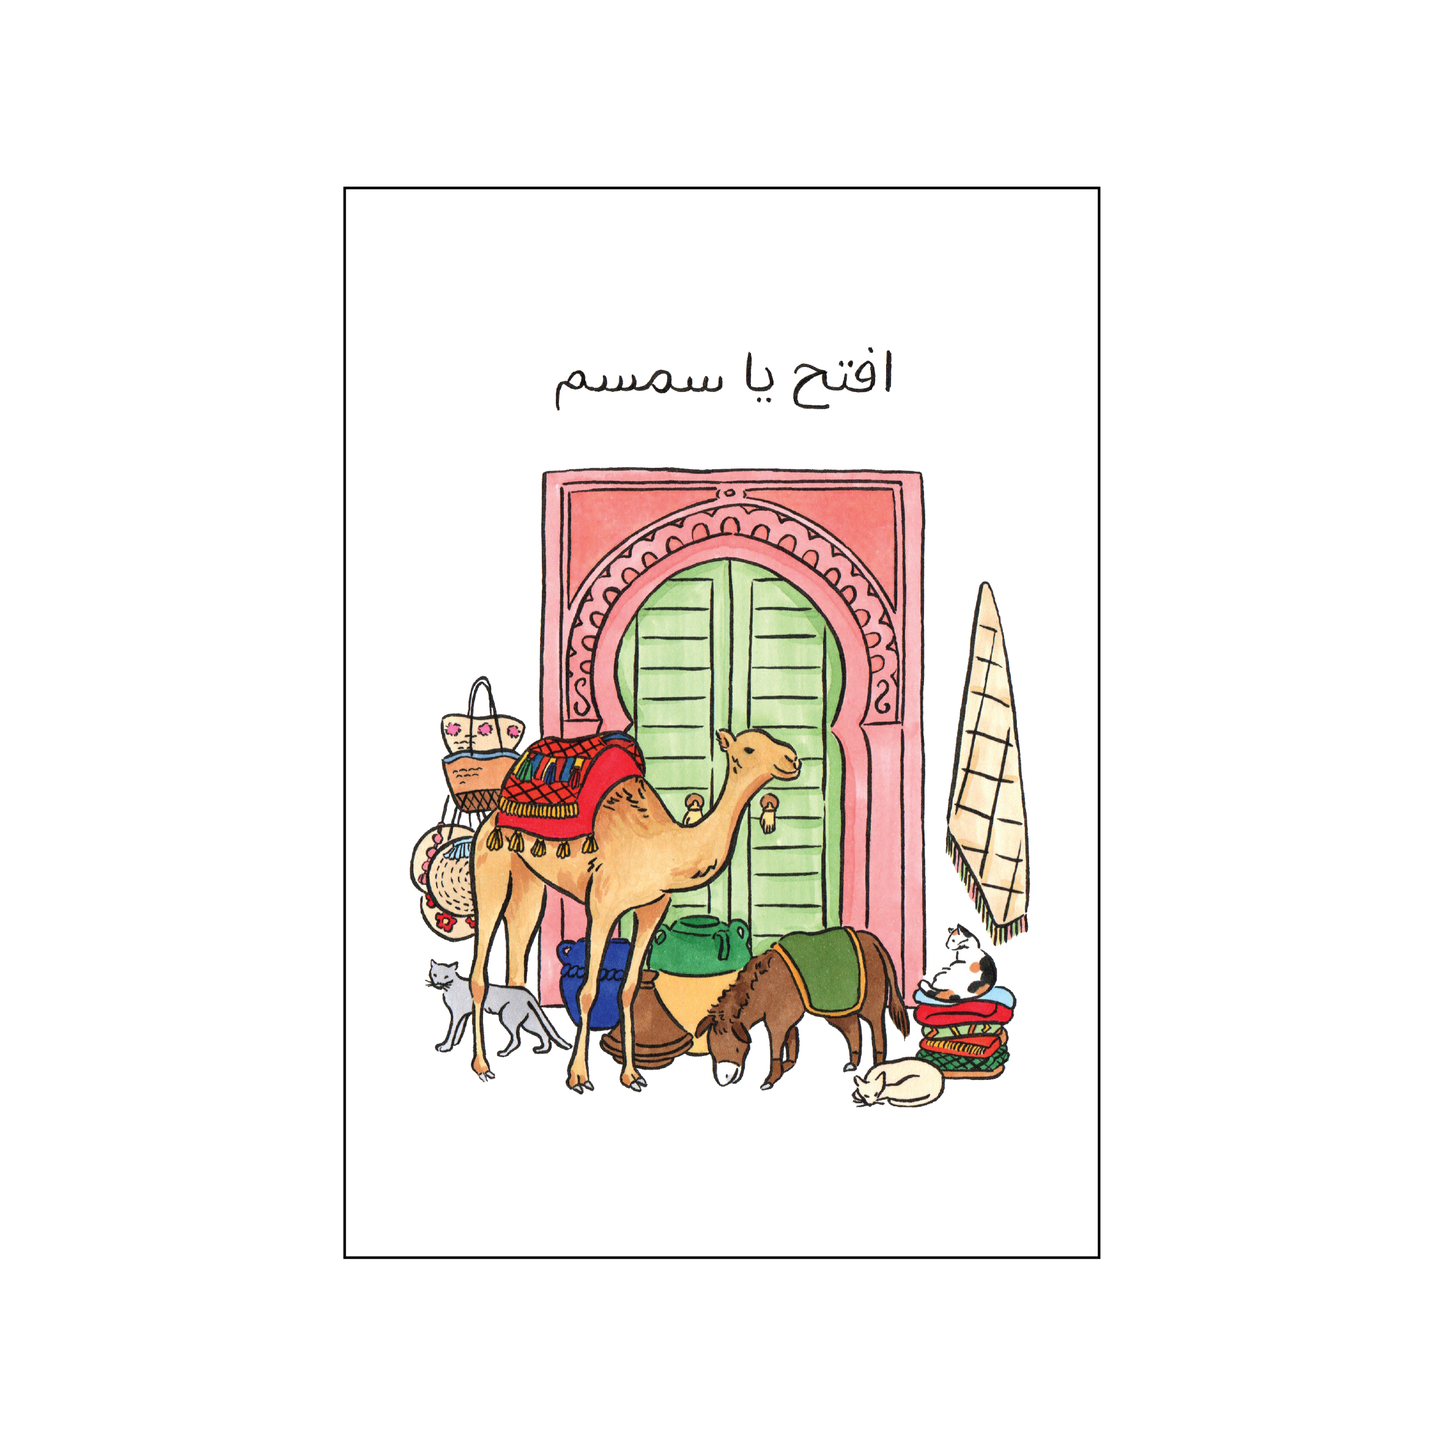 マラケシュカード - ひらけごま / Marrakesh Card - Open Sesame